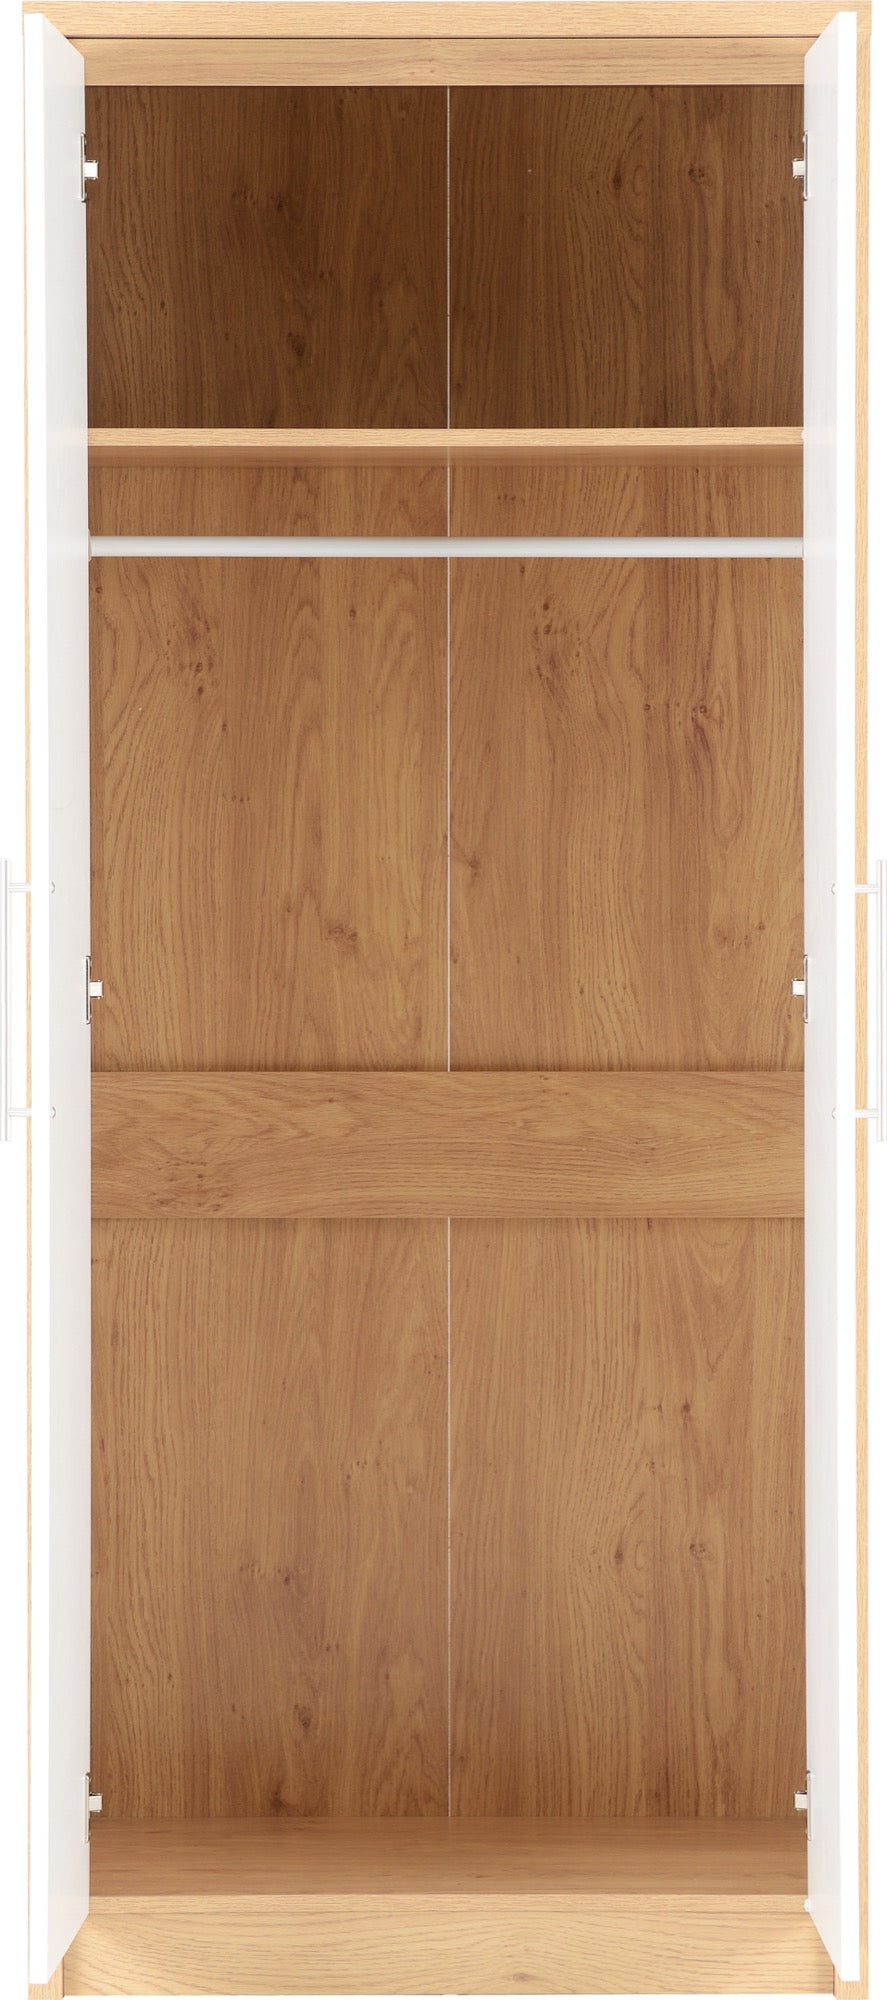 Seville 2 Door Wardrobe - White High Gloss/Light Oak Effect Veneer